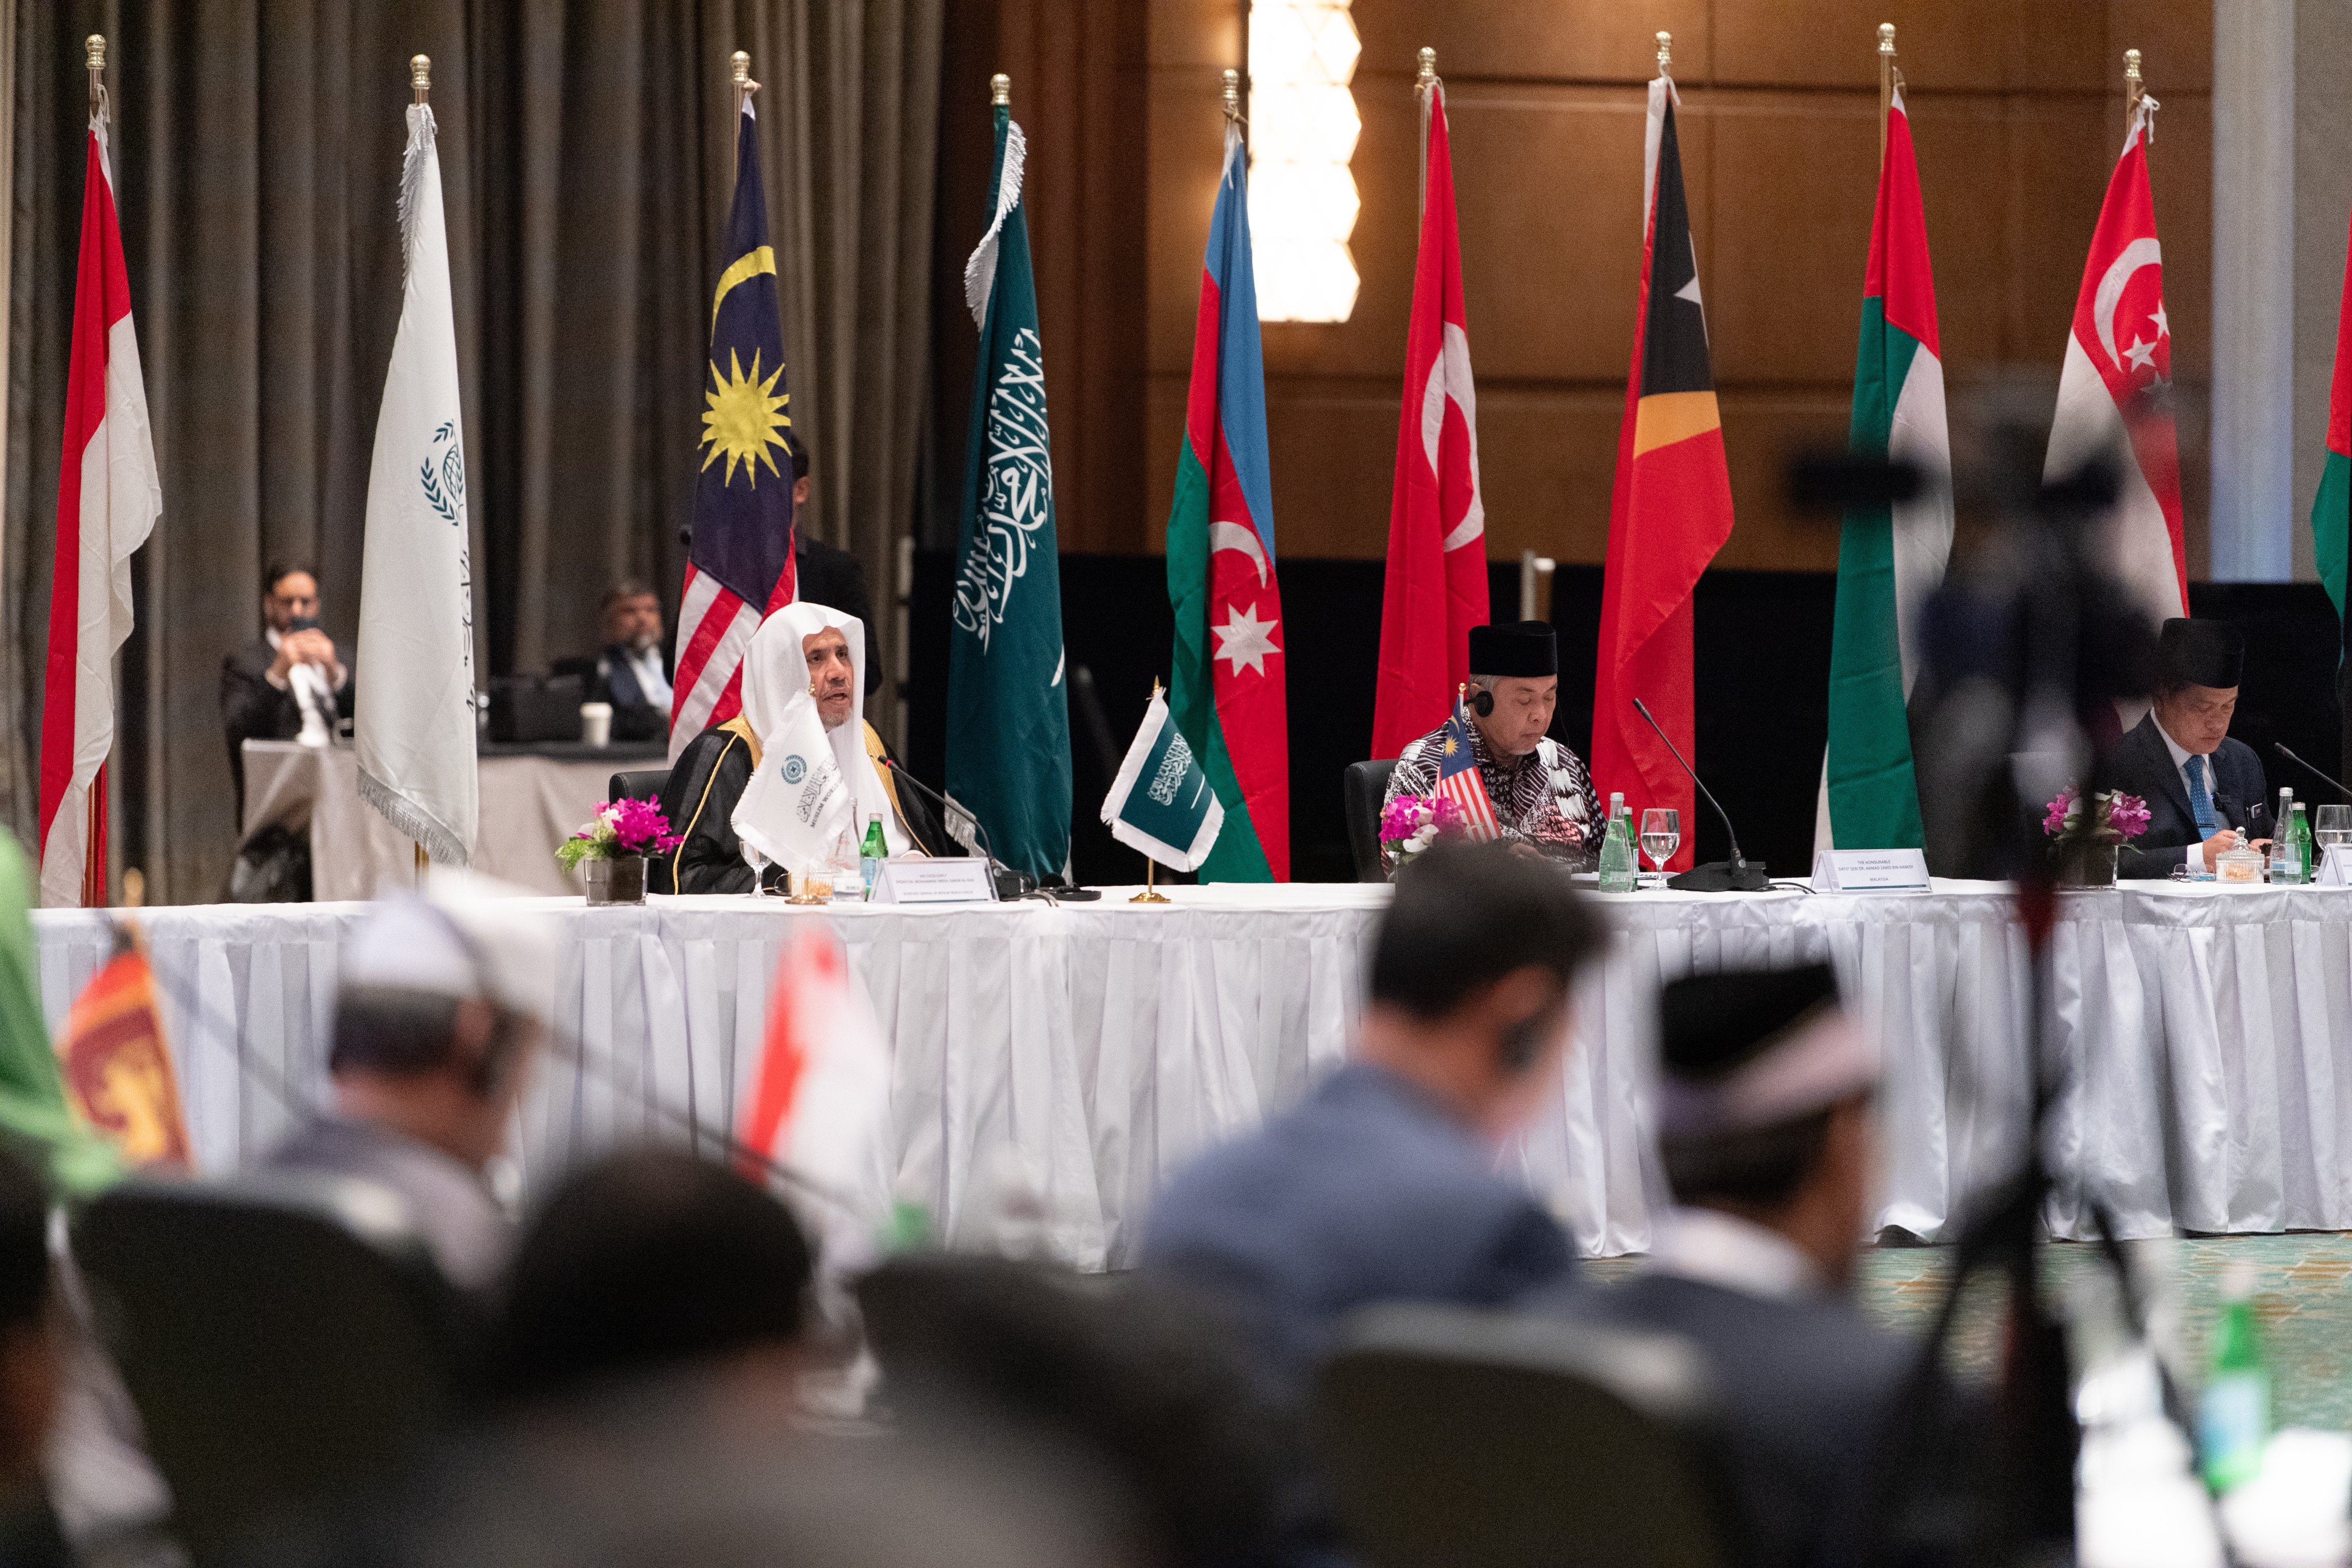 سخنان جناب دبیر کل، آقای دکتر شیخ محمد العیسی، در کنفرانس مطبوعاتی رسانه های آسیایی پس از افتتاح «شورای علمای آسیان»